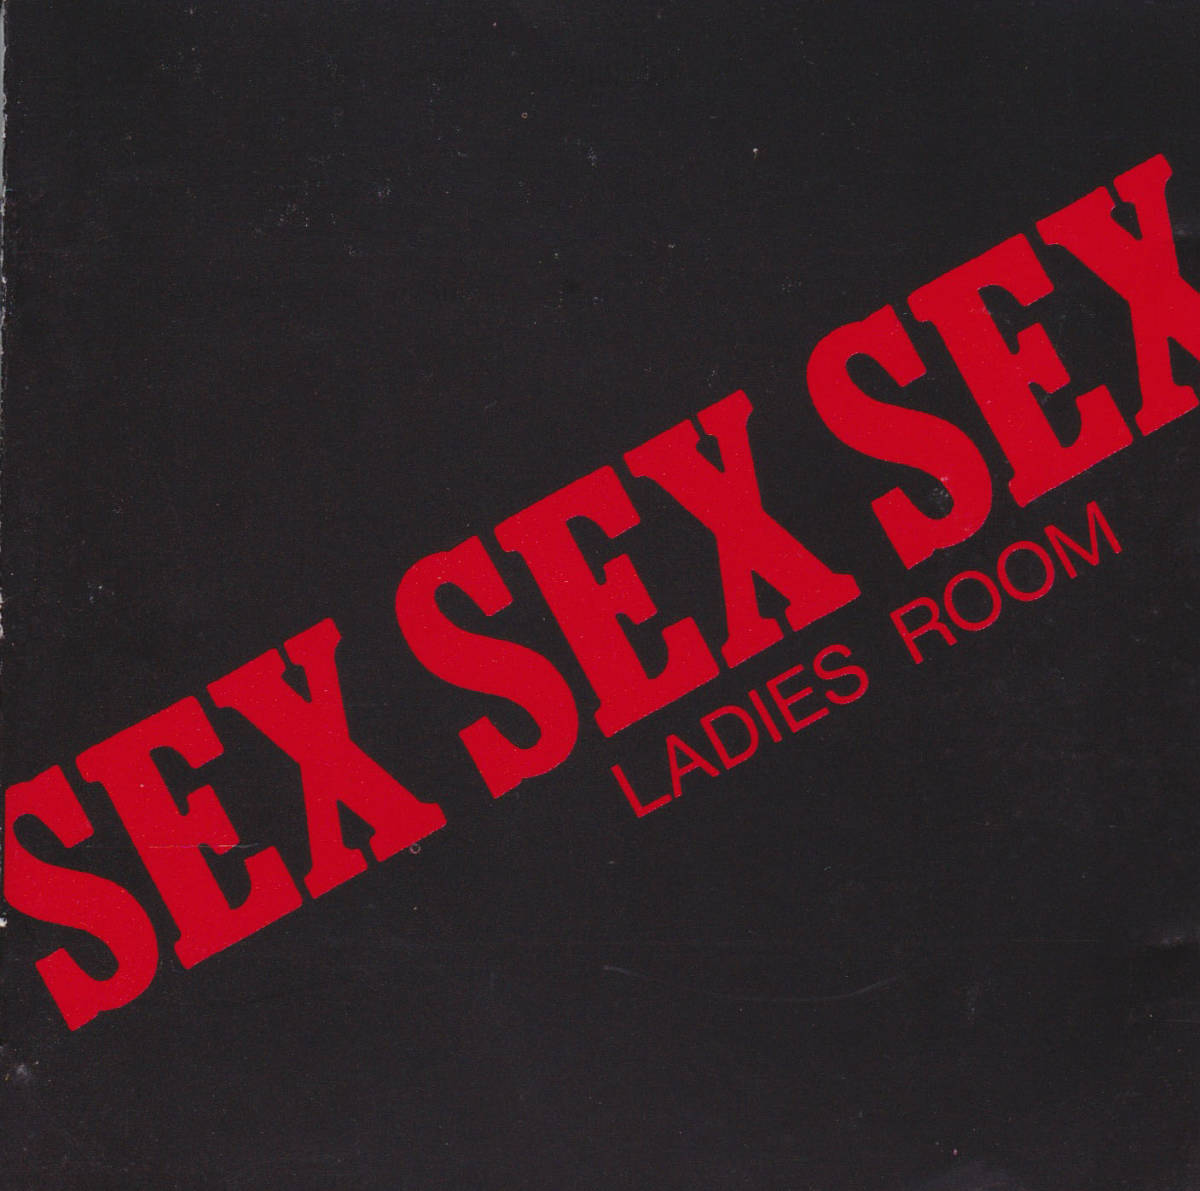 SEX SEX SEX / LADIES ROOM